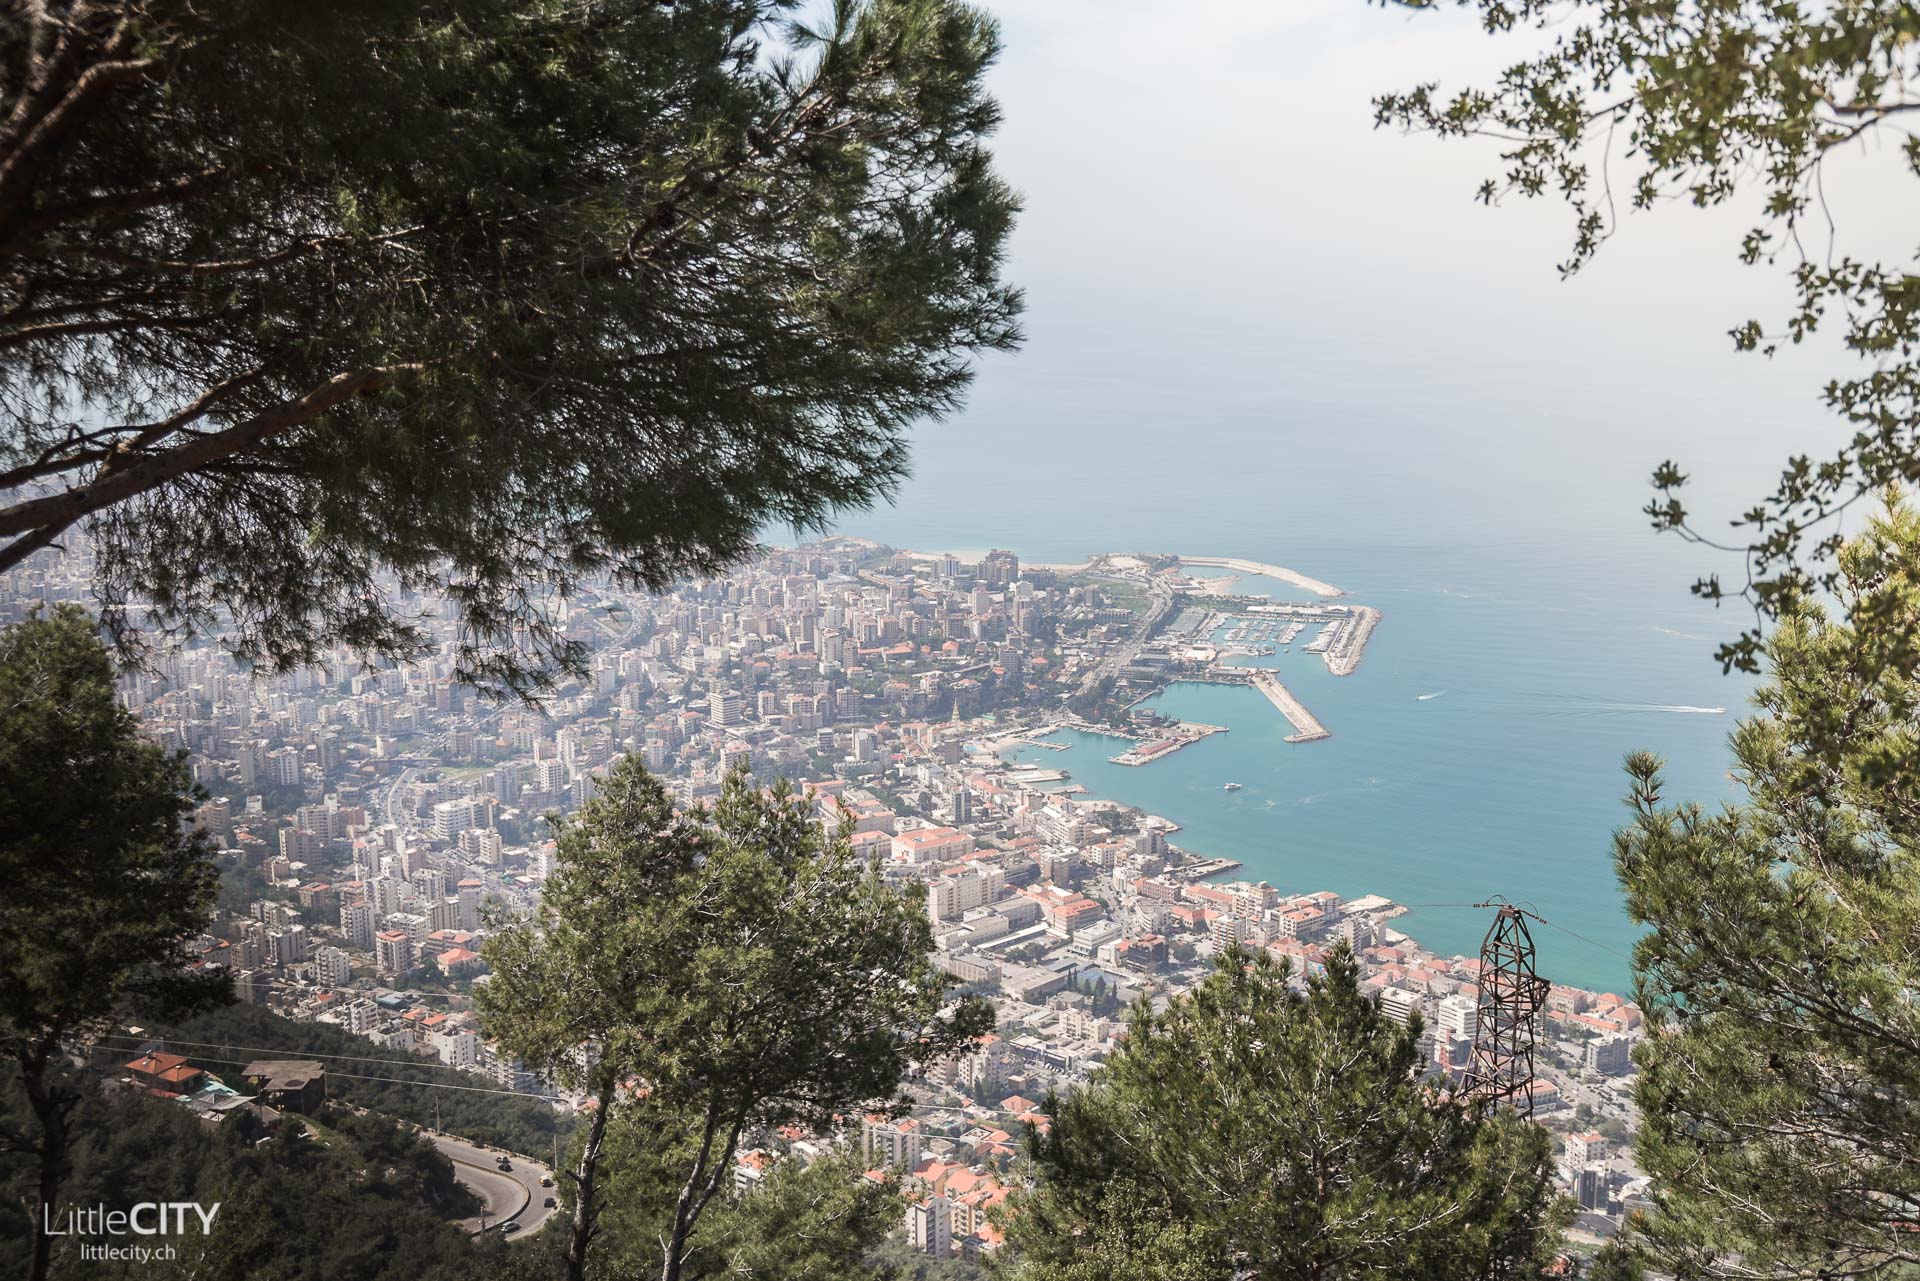 Libanon Reisebericht: Harissa Téléferique